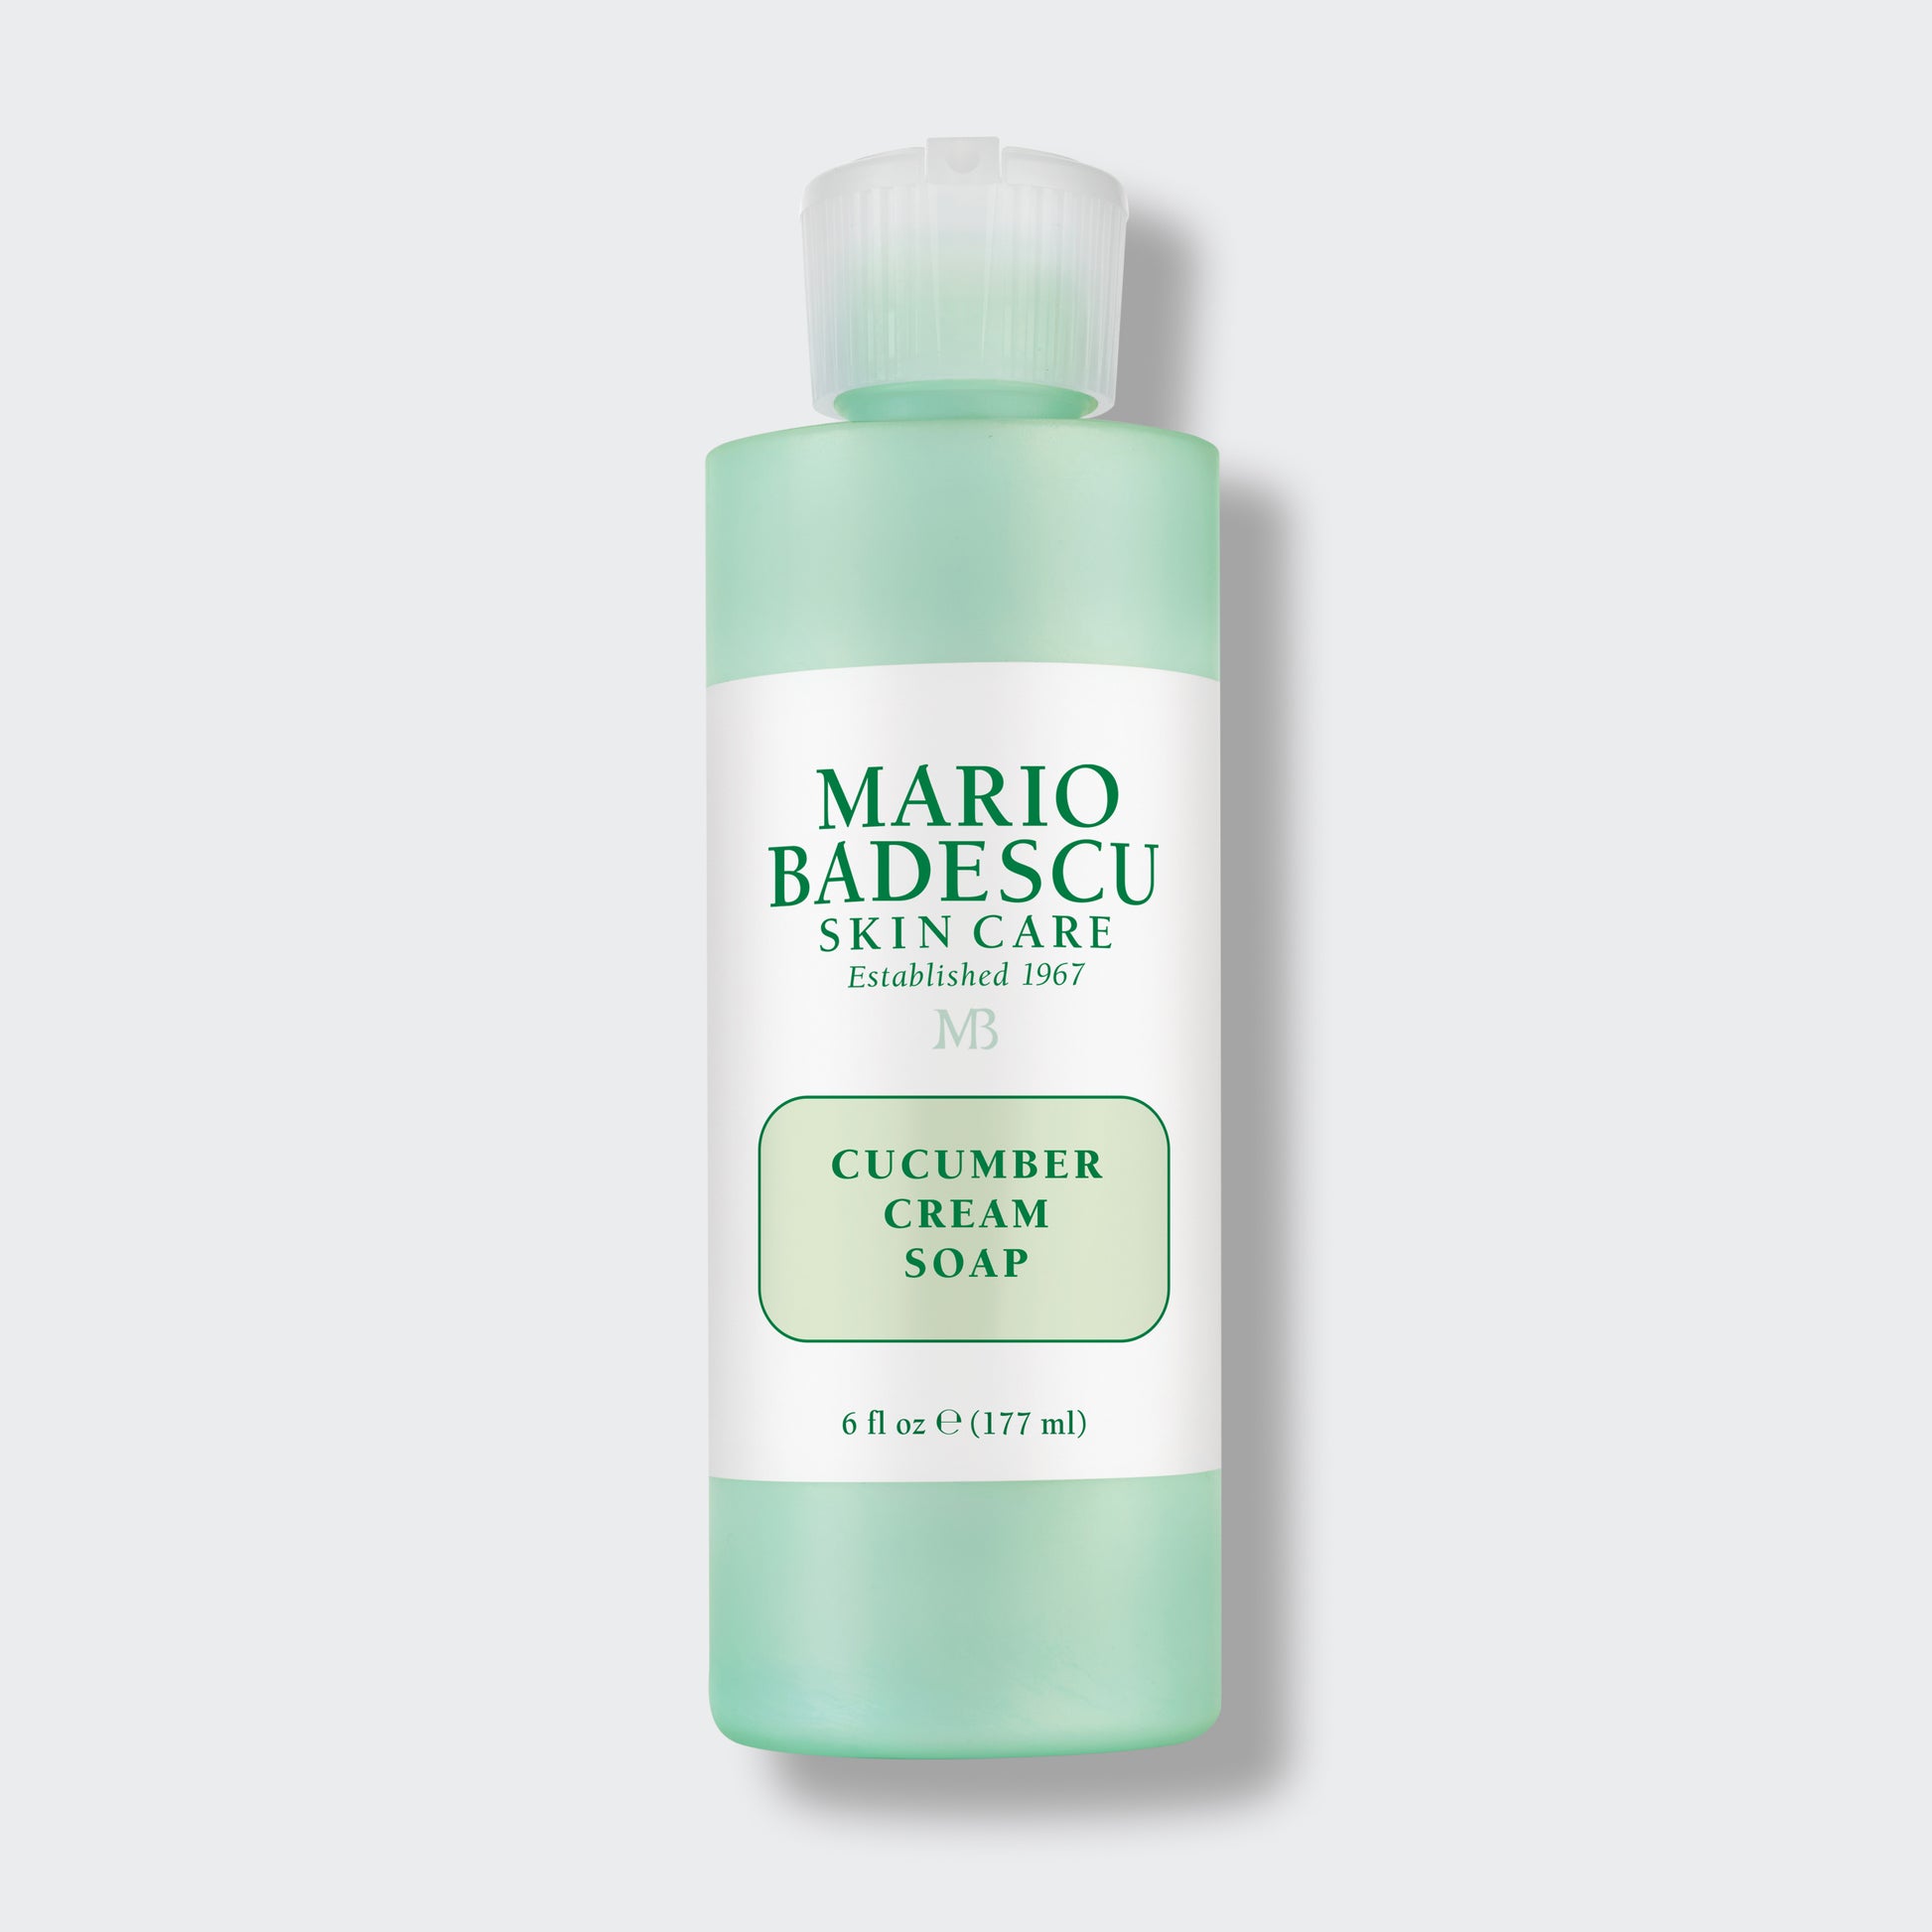  Mario Badescu Cucumber Cream Soap